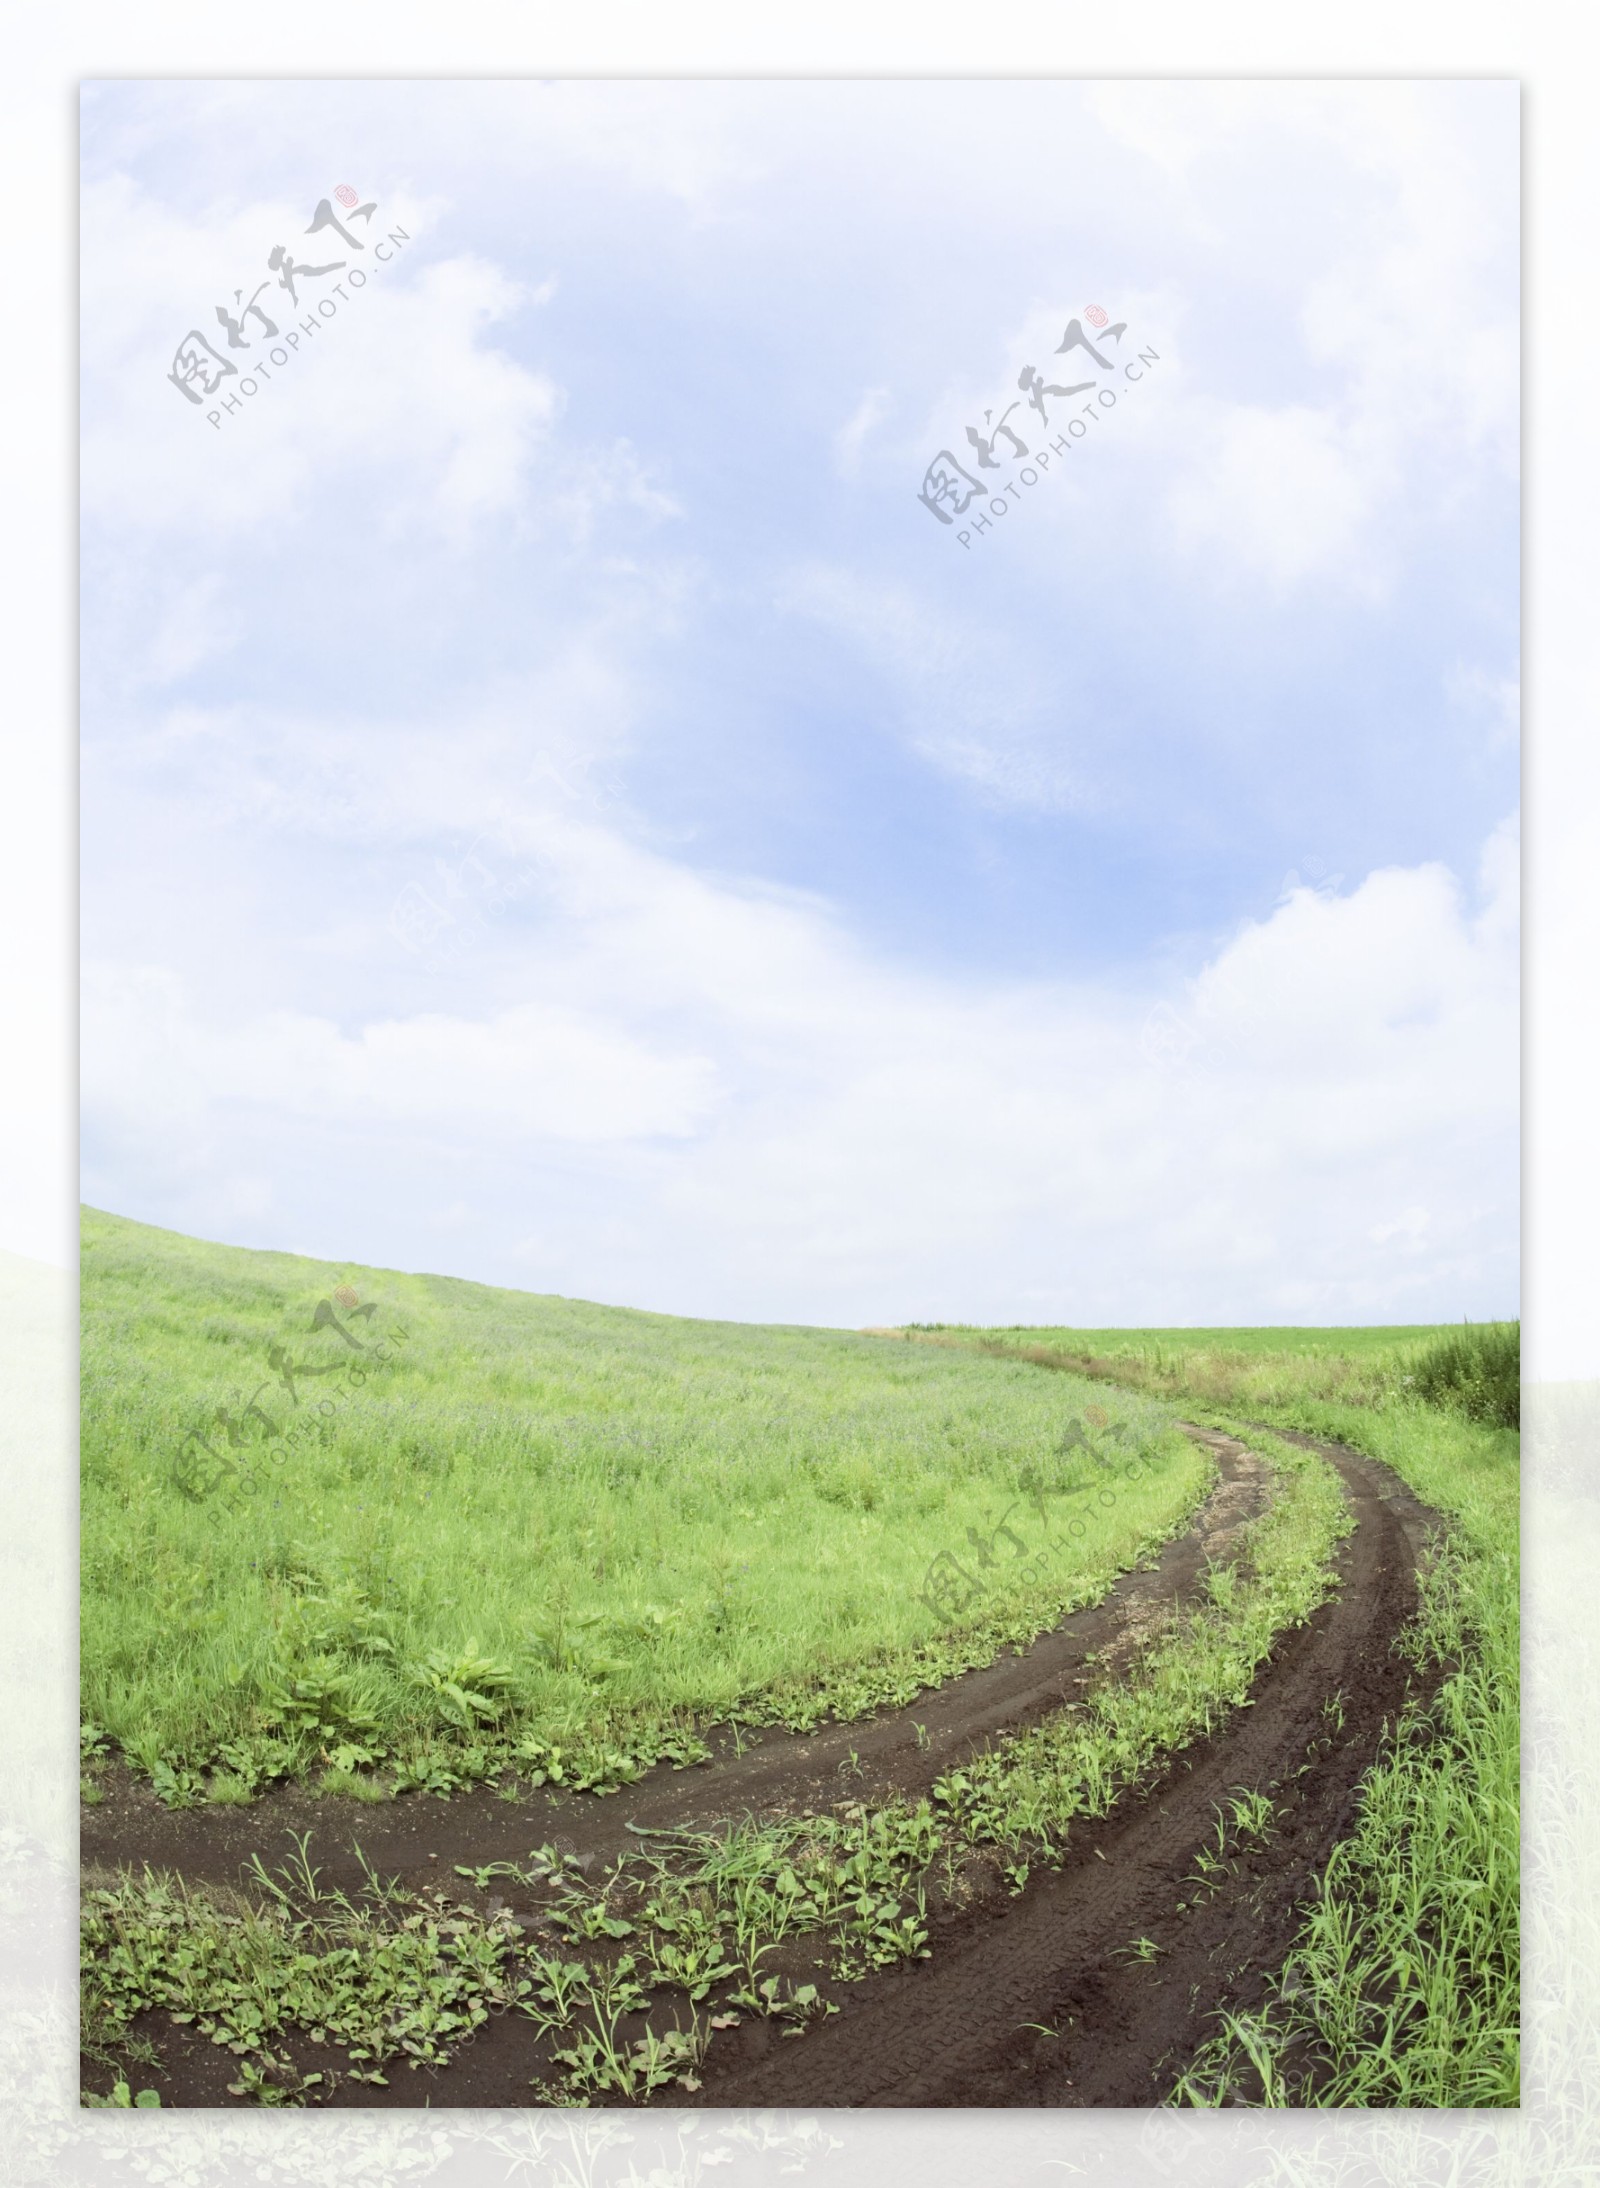 草原上的泥巴公路图片